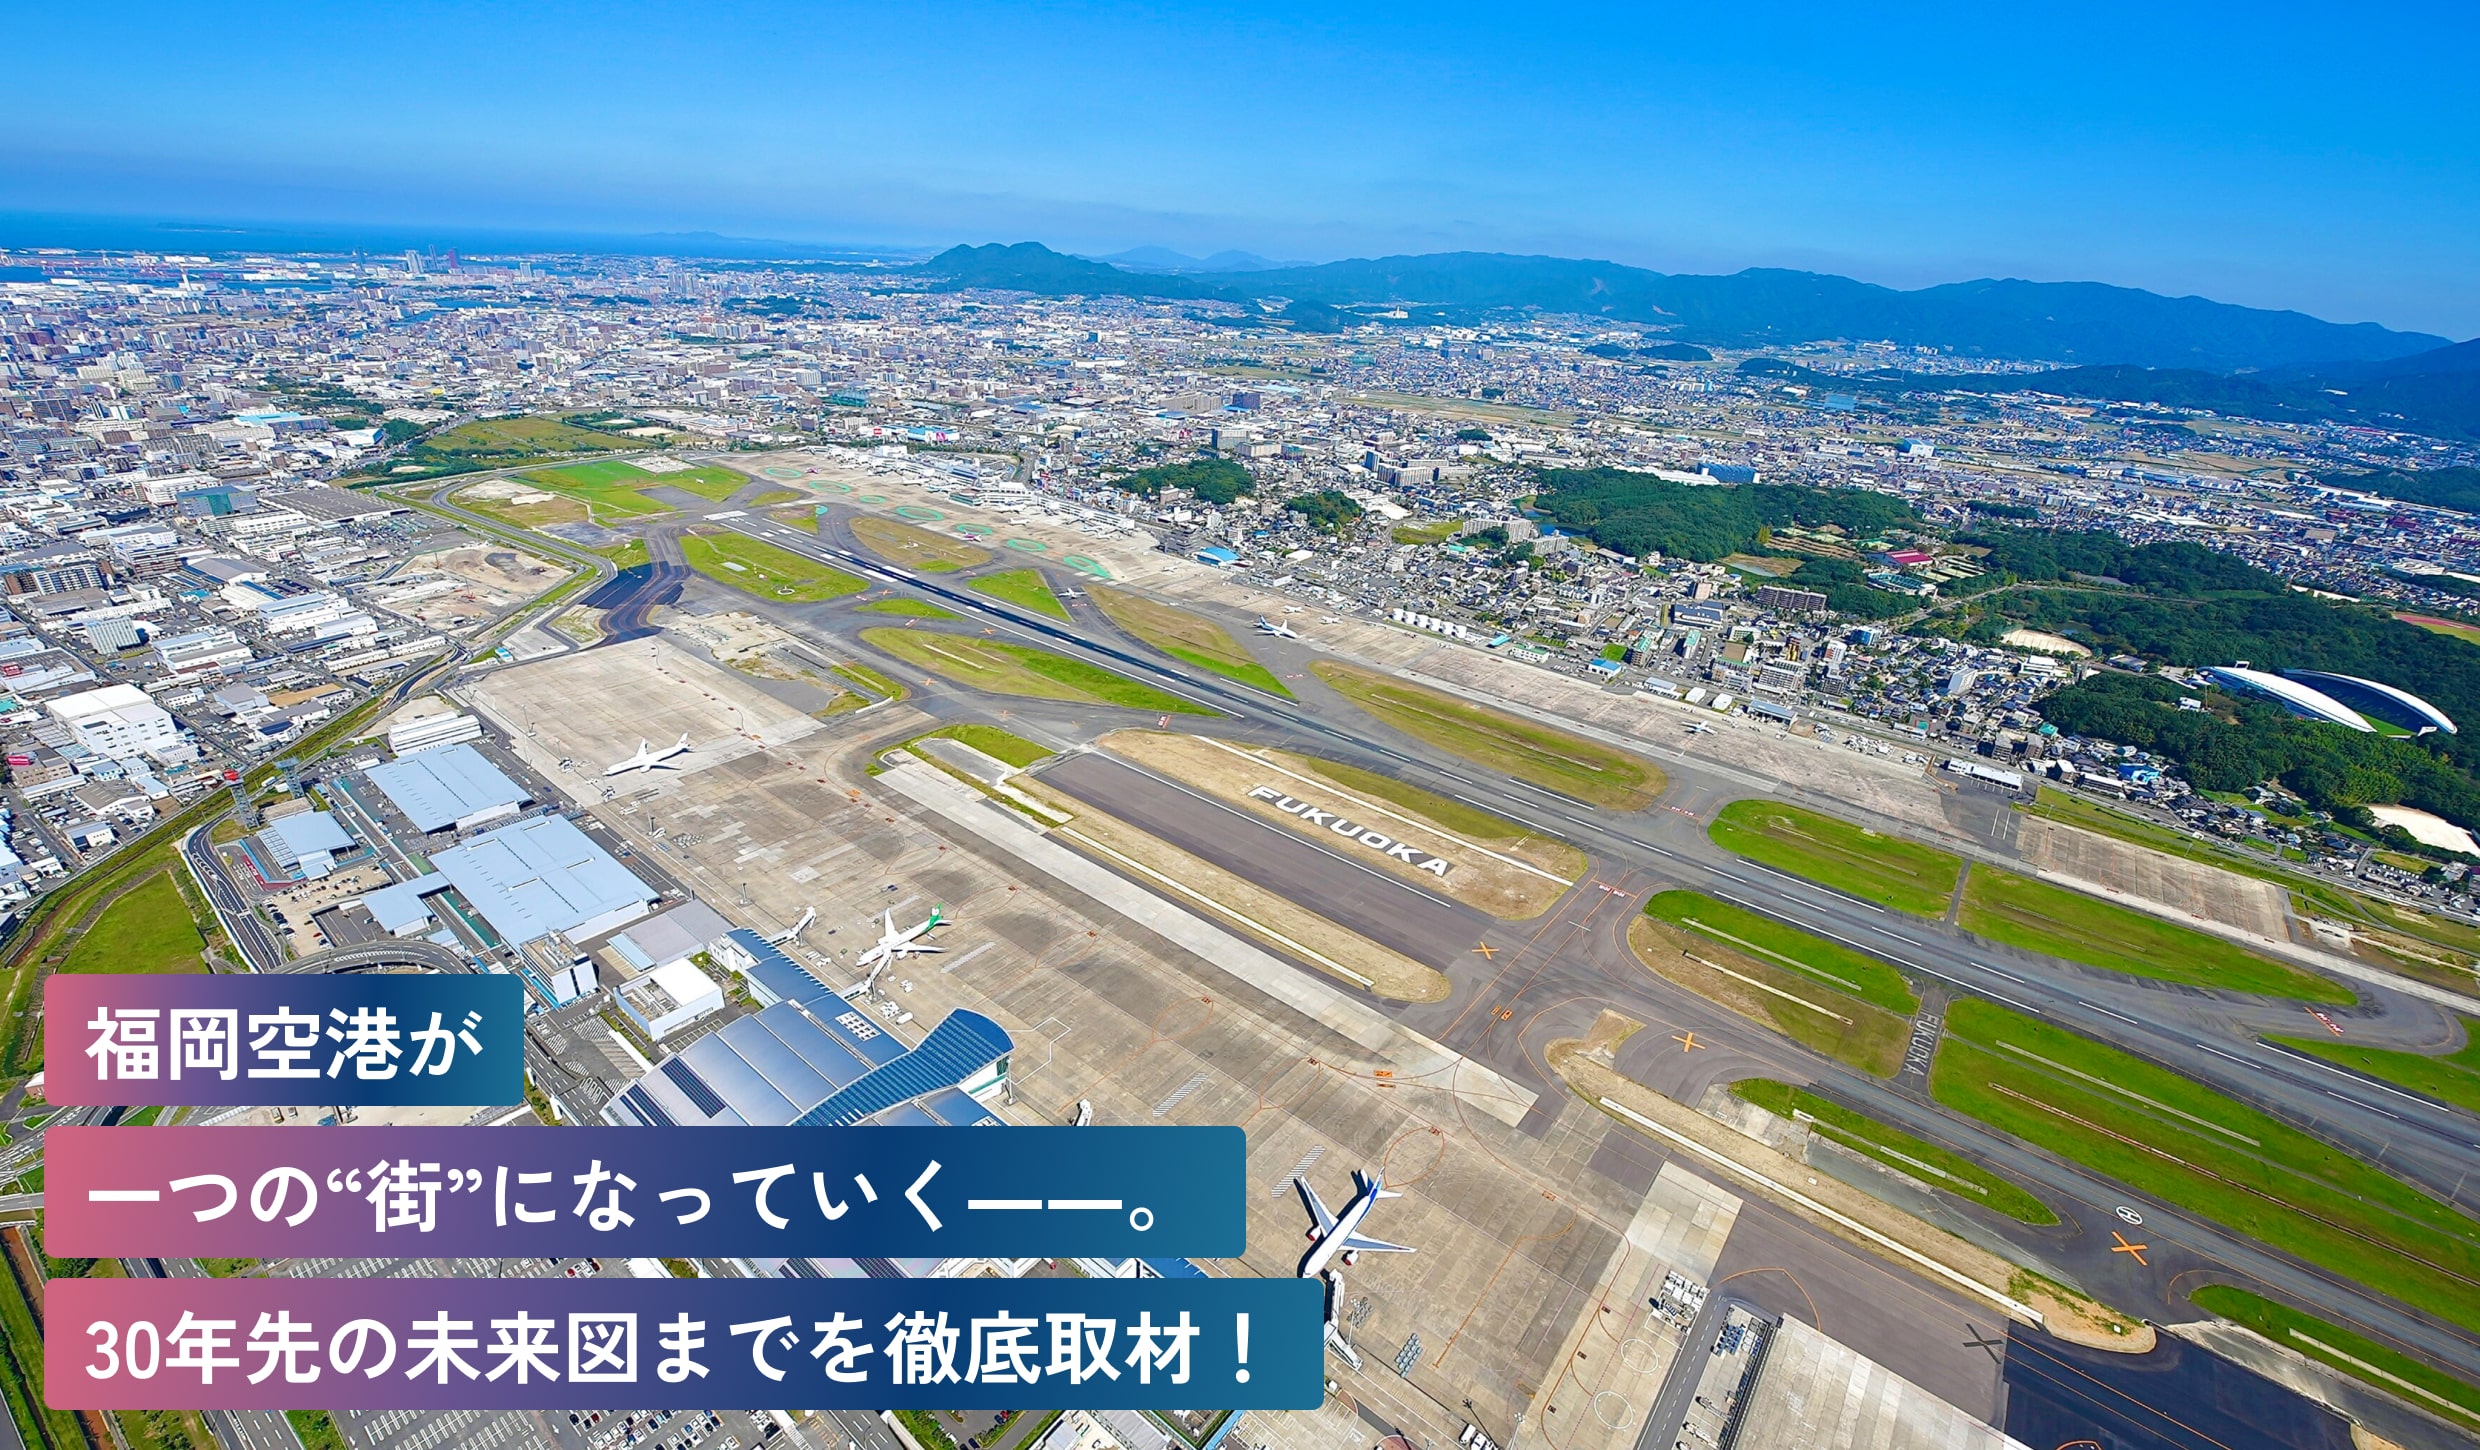 福岡空港が一つの“街”に
なっていく――。30年先の
未来図までを徹底取材！